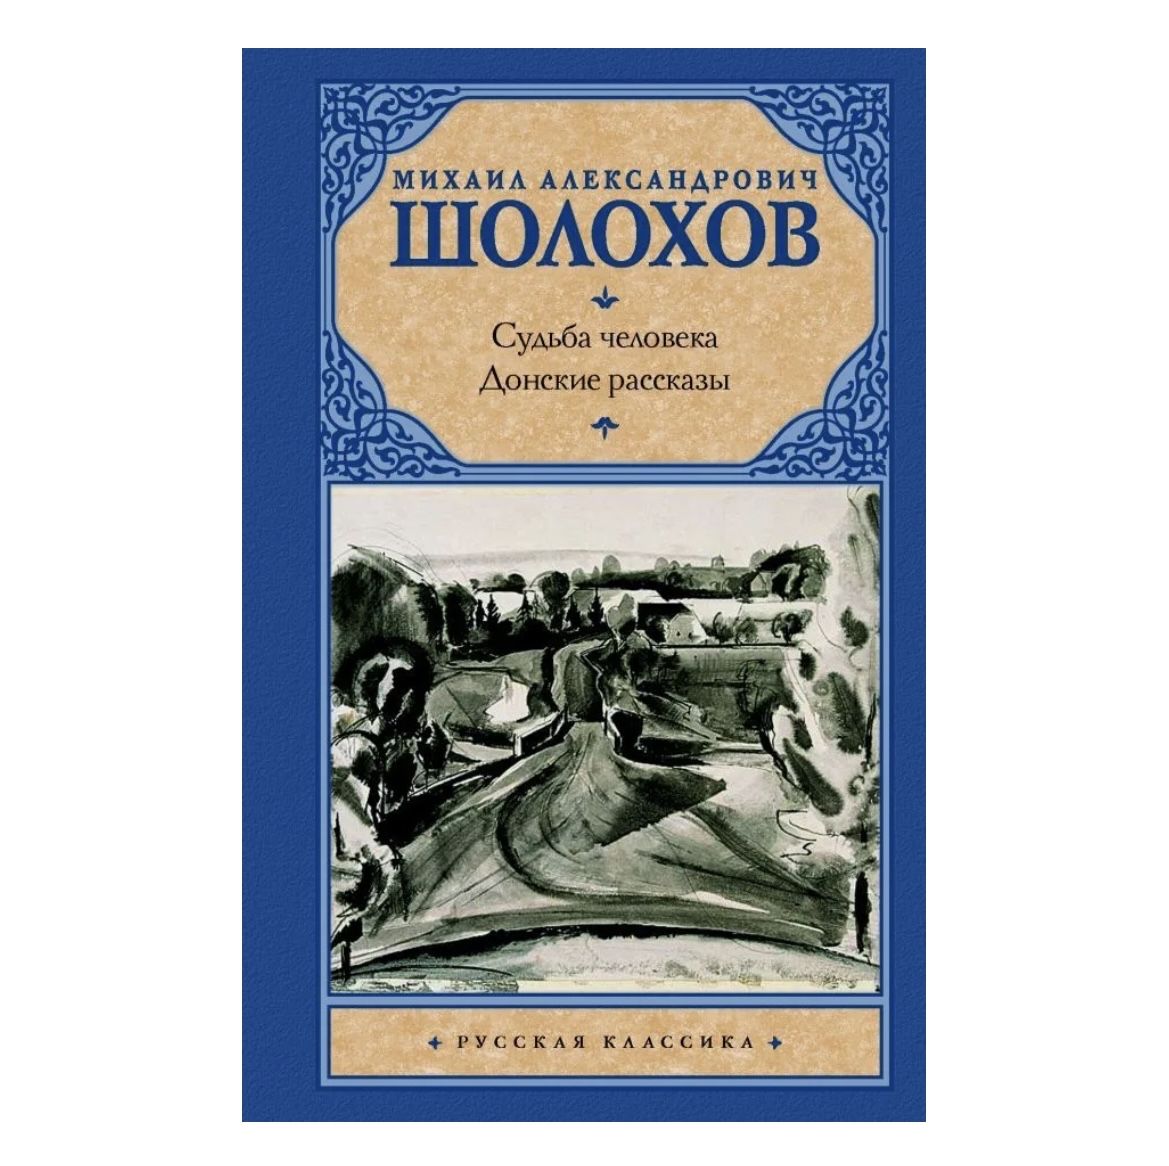 Произведение донские рассказы. Шолохов м. "поднятая Целина". "Судьба человека" (м.Шолохов 1957).